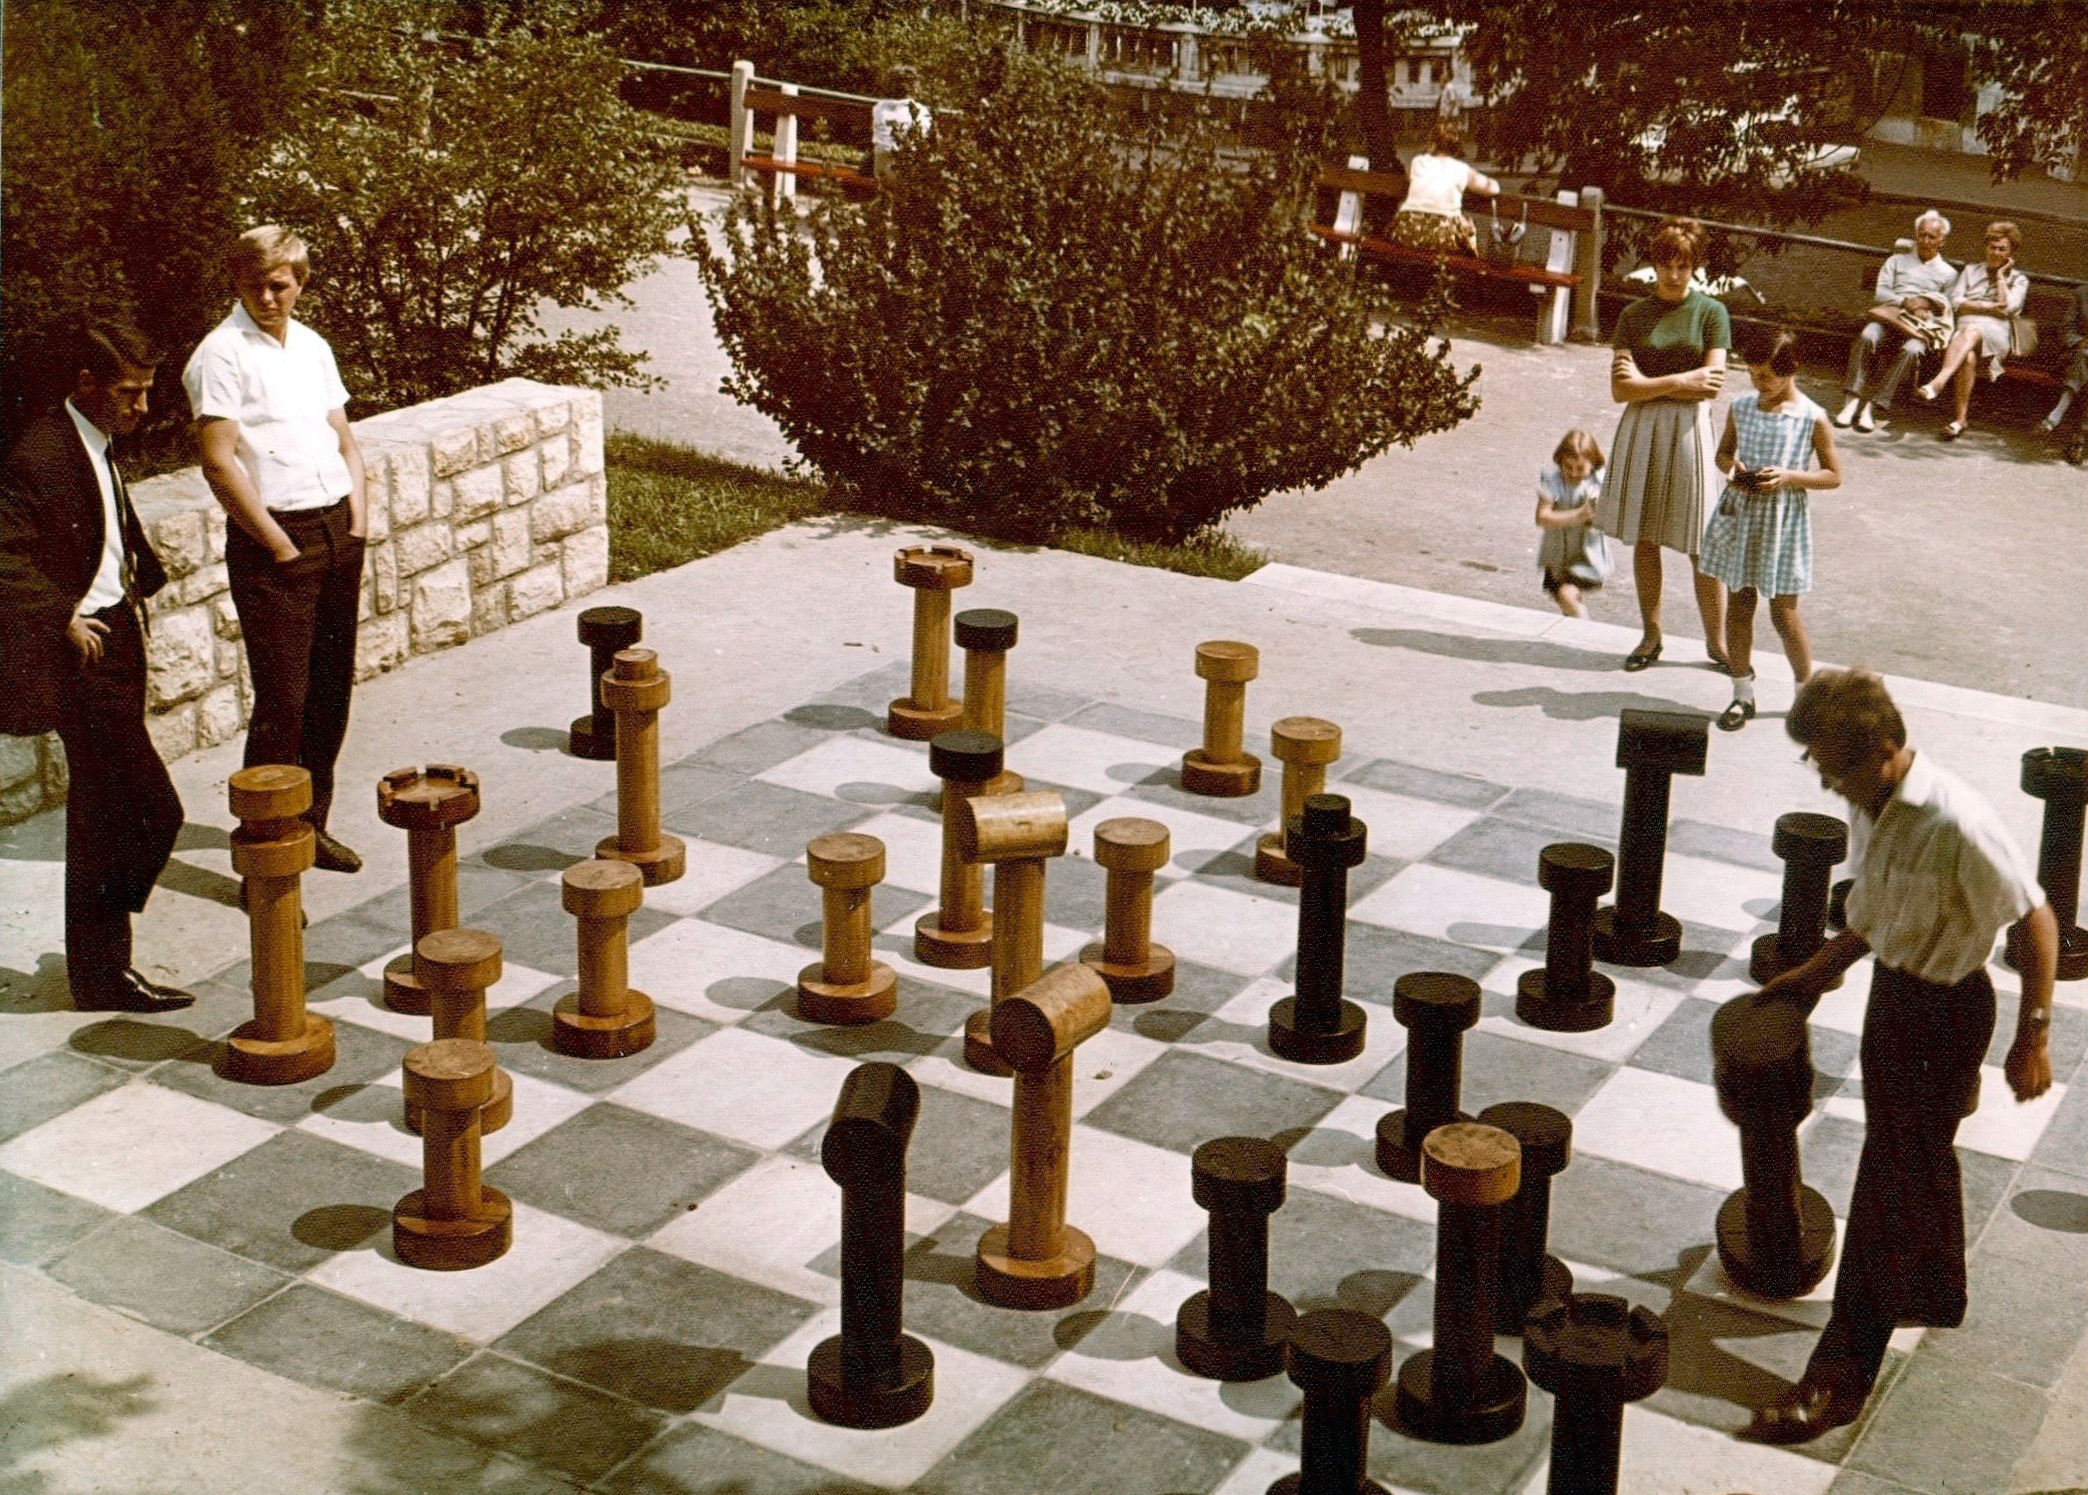 Fortepan / Főkert / Hlatky Katalin-Játszótér a Kelenhegyi útnál, 1972-ben, a háttérben a fák takarásában a Gellért Szálló éttermének terasza és a fürdő bejárata látszik.